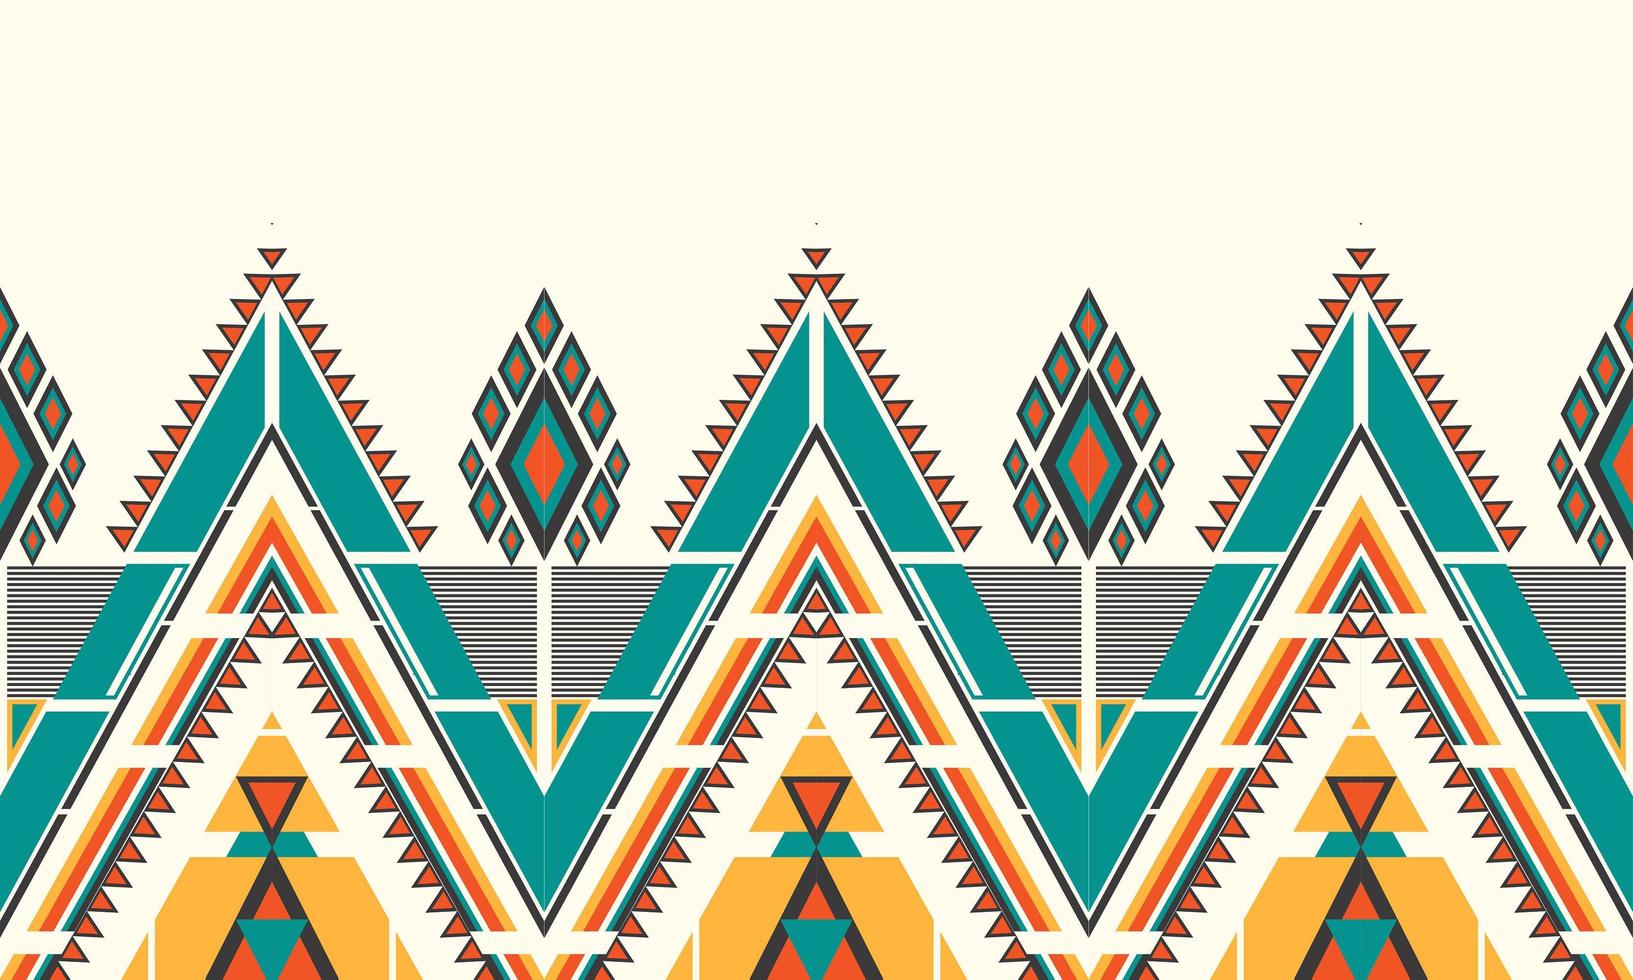 geometrische etnische patroon borduurwerk .tapijt,behang,kleding,inwikkeling,batik,stof,vector illustratie borduurstijl. vector